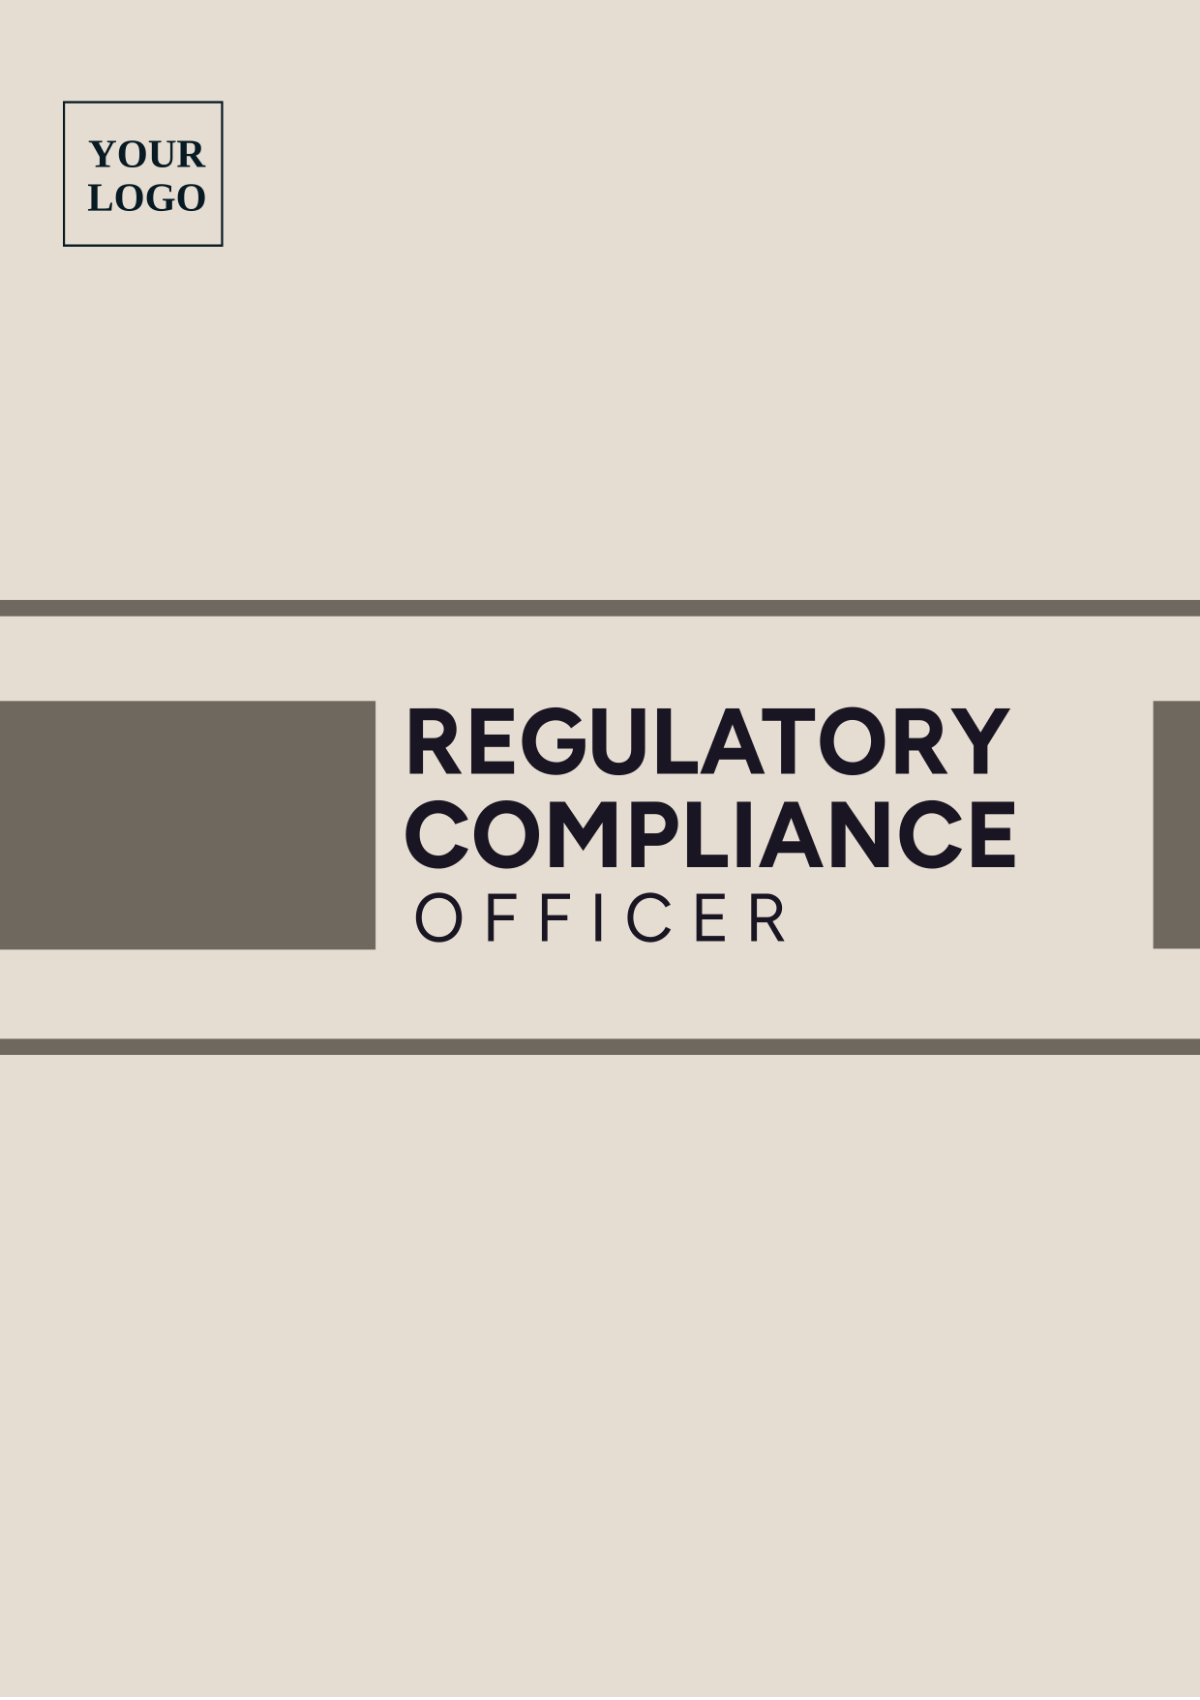 Regulatory Compliance Officer Template